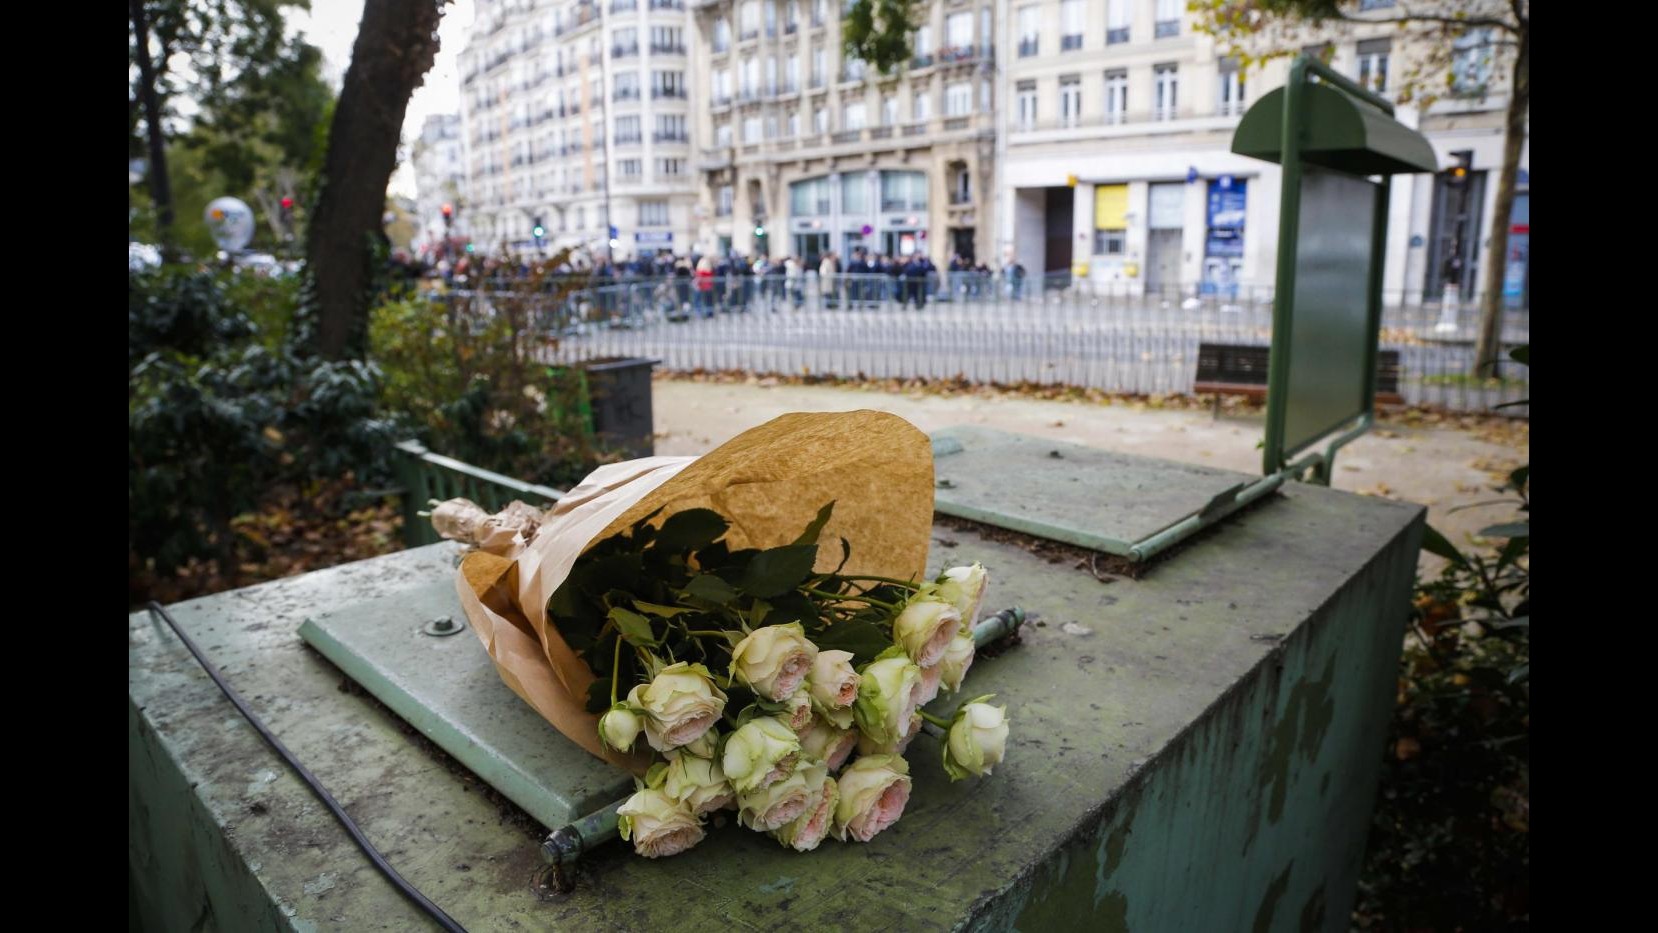 Sangue e proiettili nelle strade: la guerra ritorna a Parigi   – dal nostro inviato